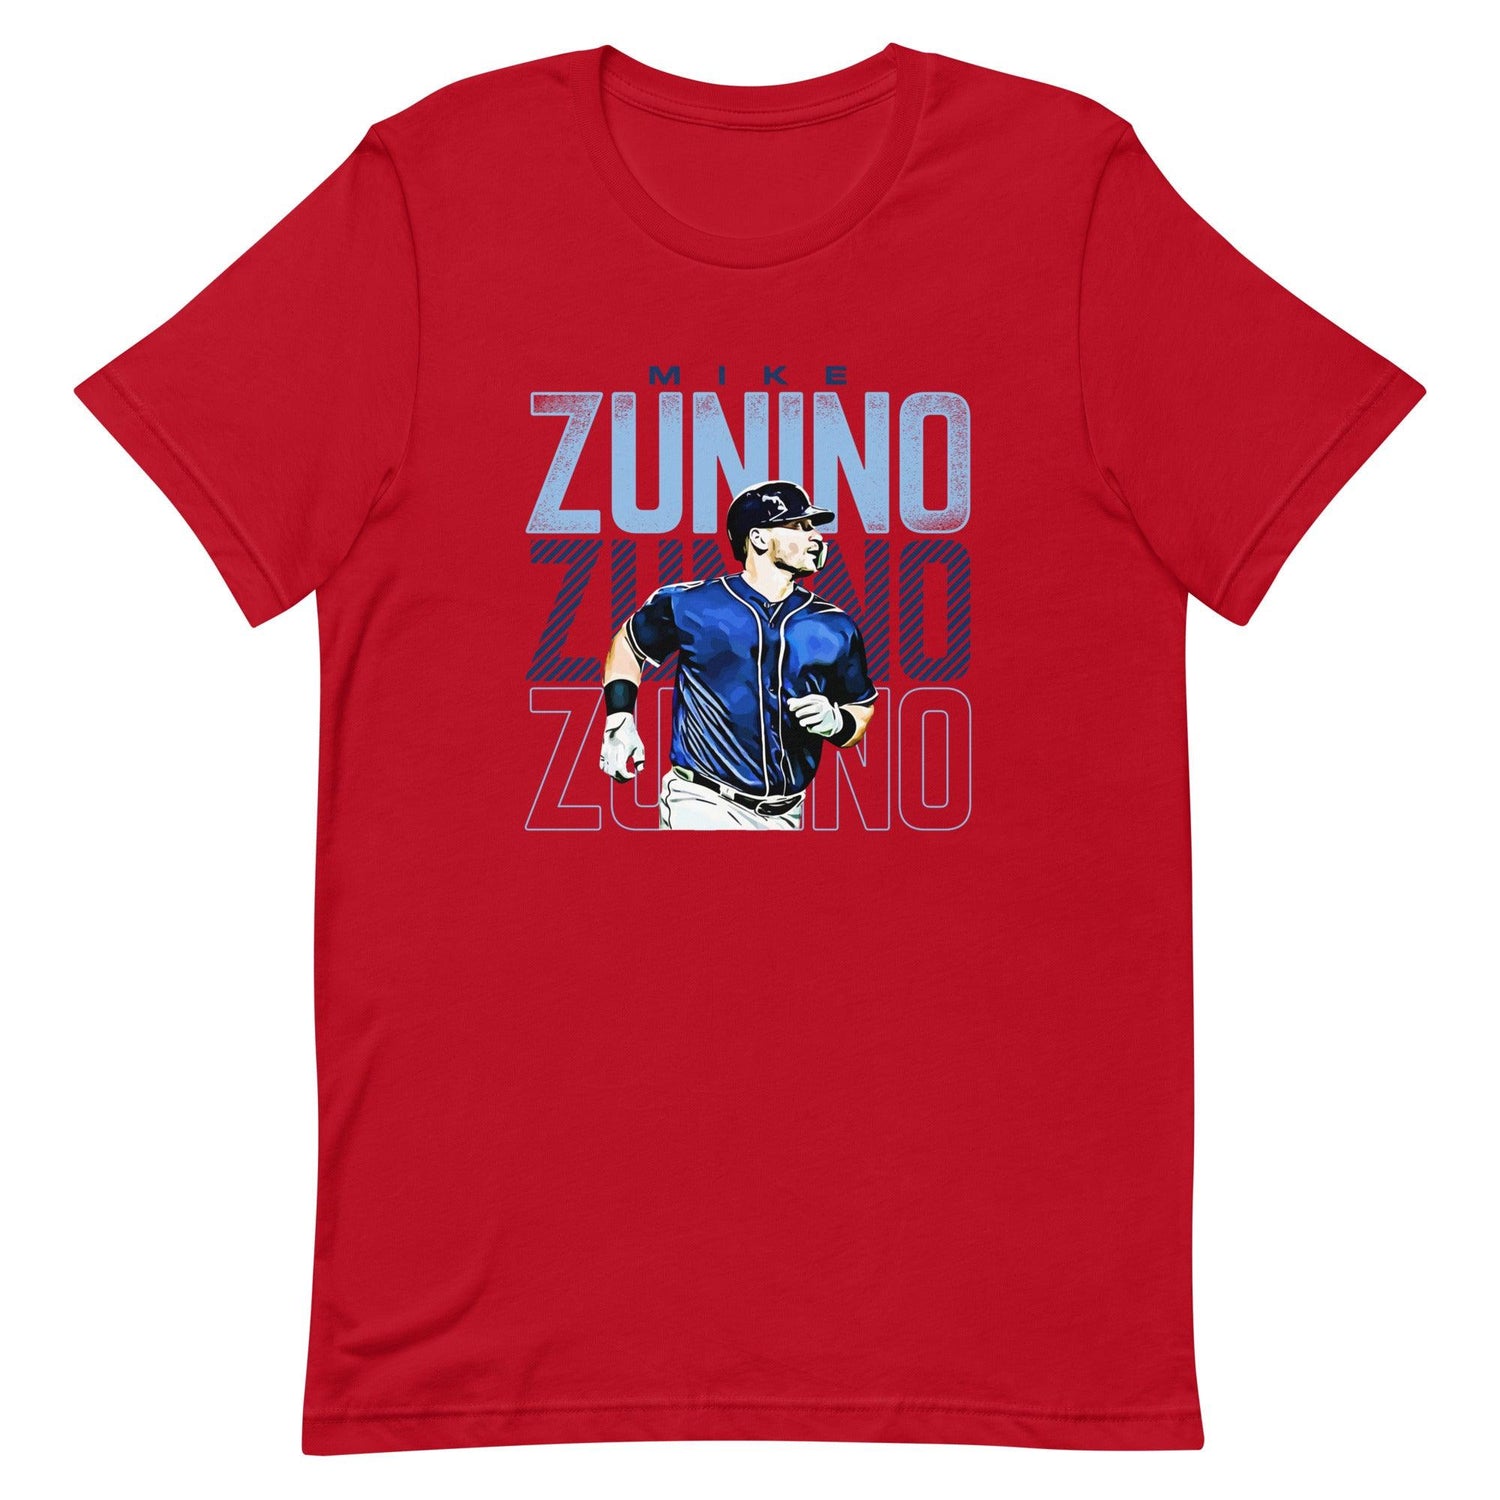 Mike Zunino "Walk Off" t-shirt - Fan Arch